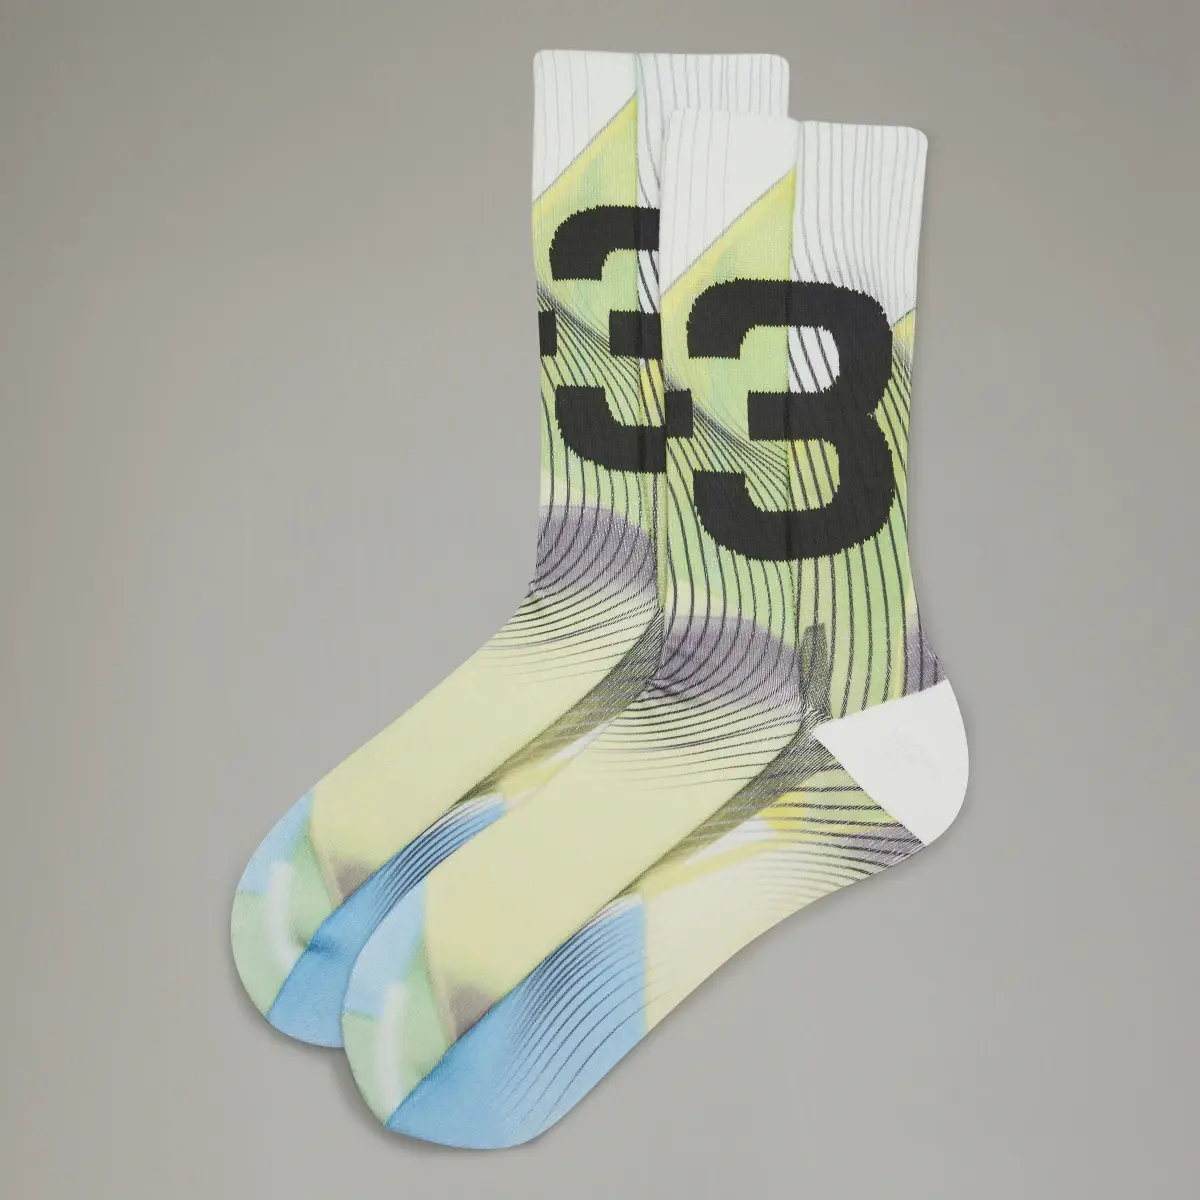 Adidas Y-3 Allover Print Socks. 1